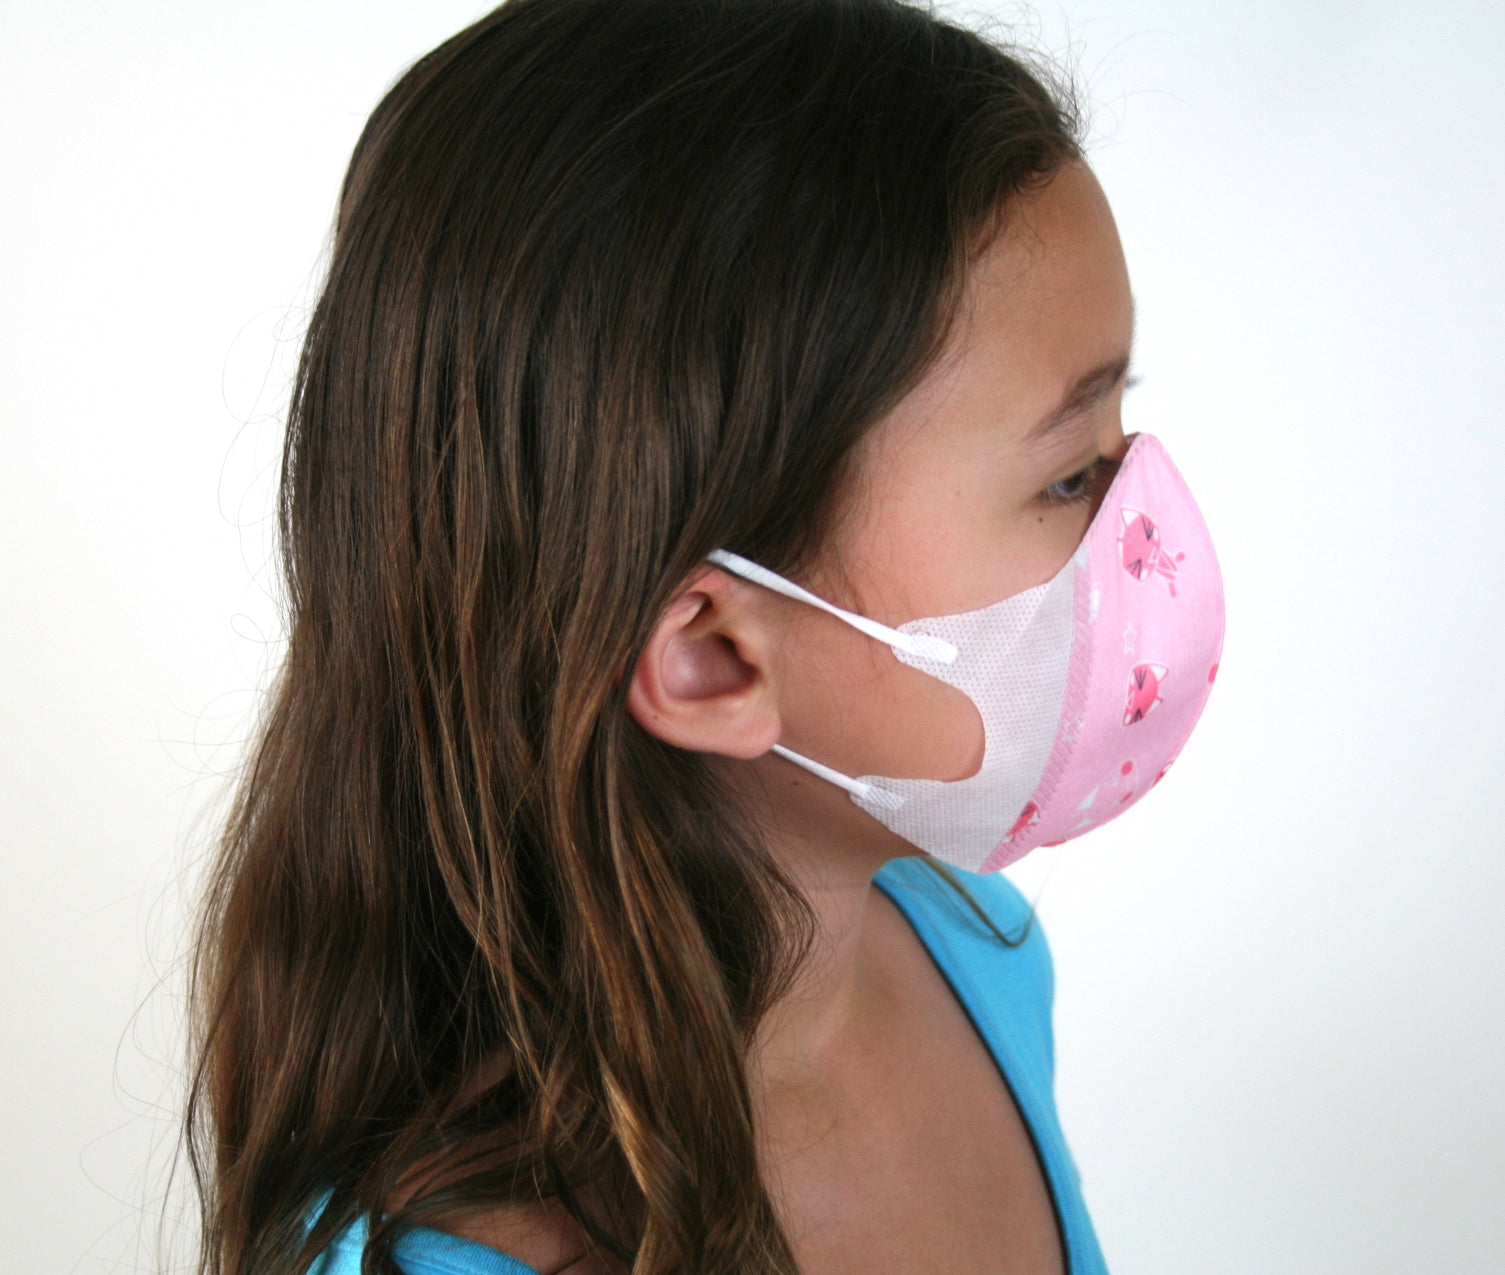 soft kids face masks kids face masks for sale  best kids masks kids face mask with filter pink girls face masks